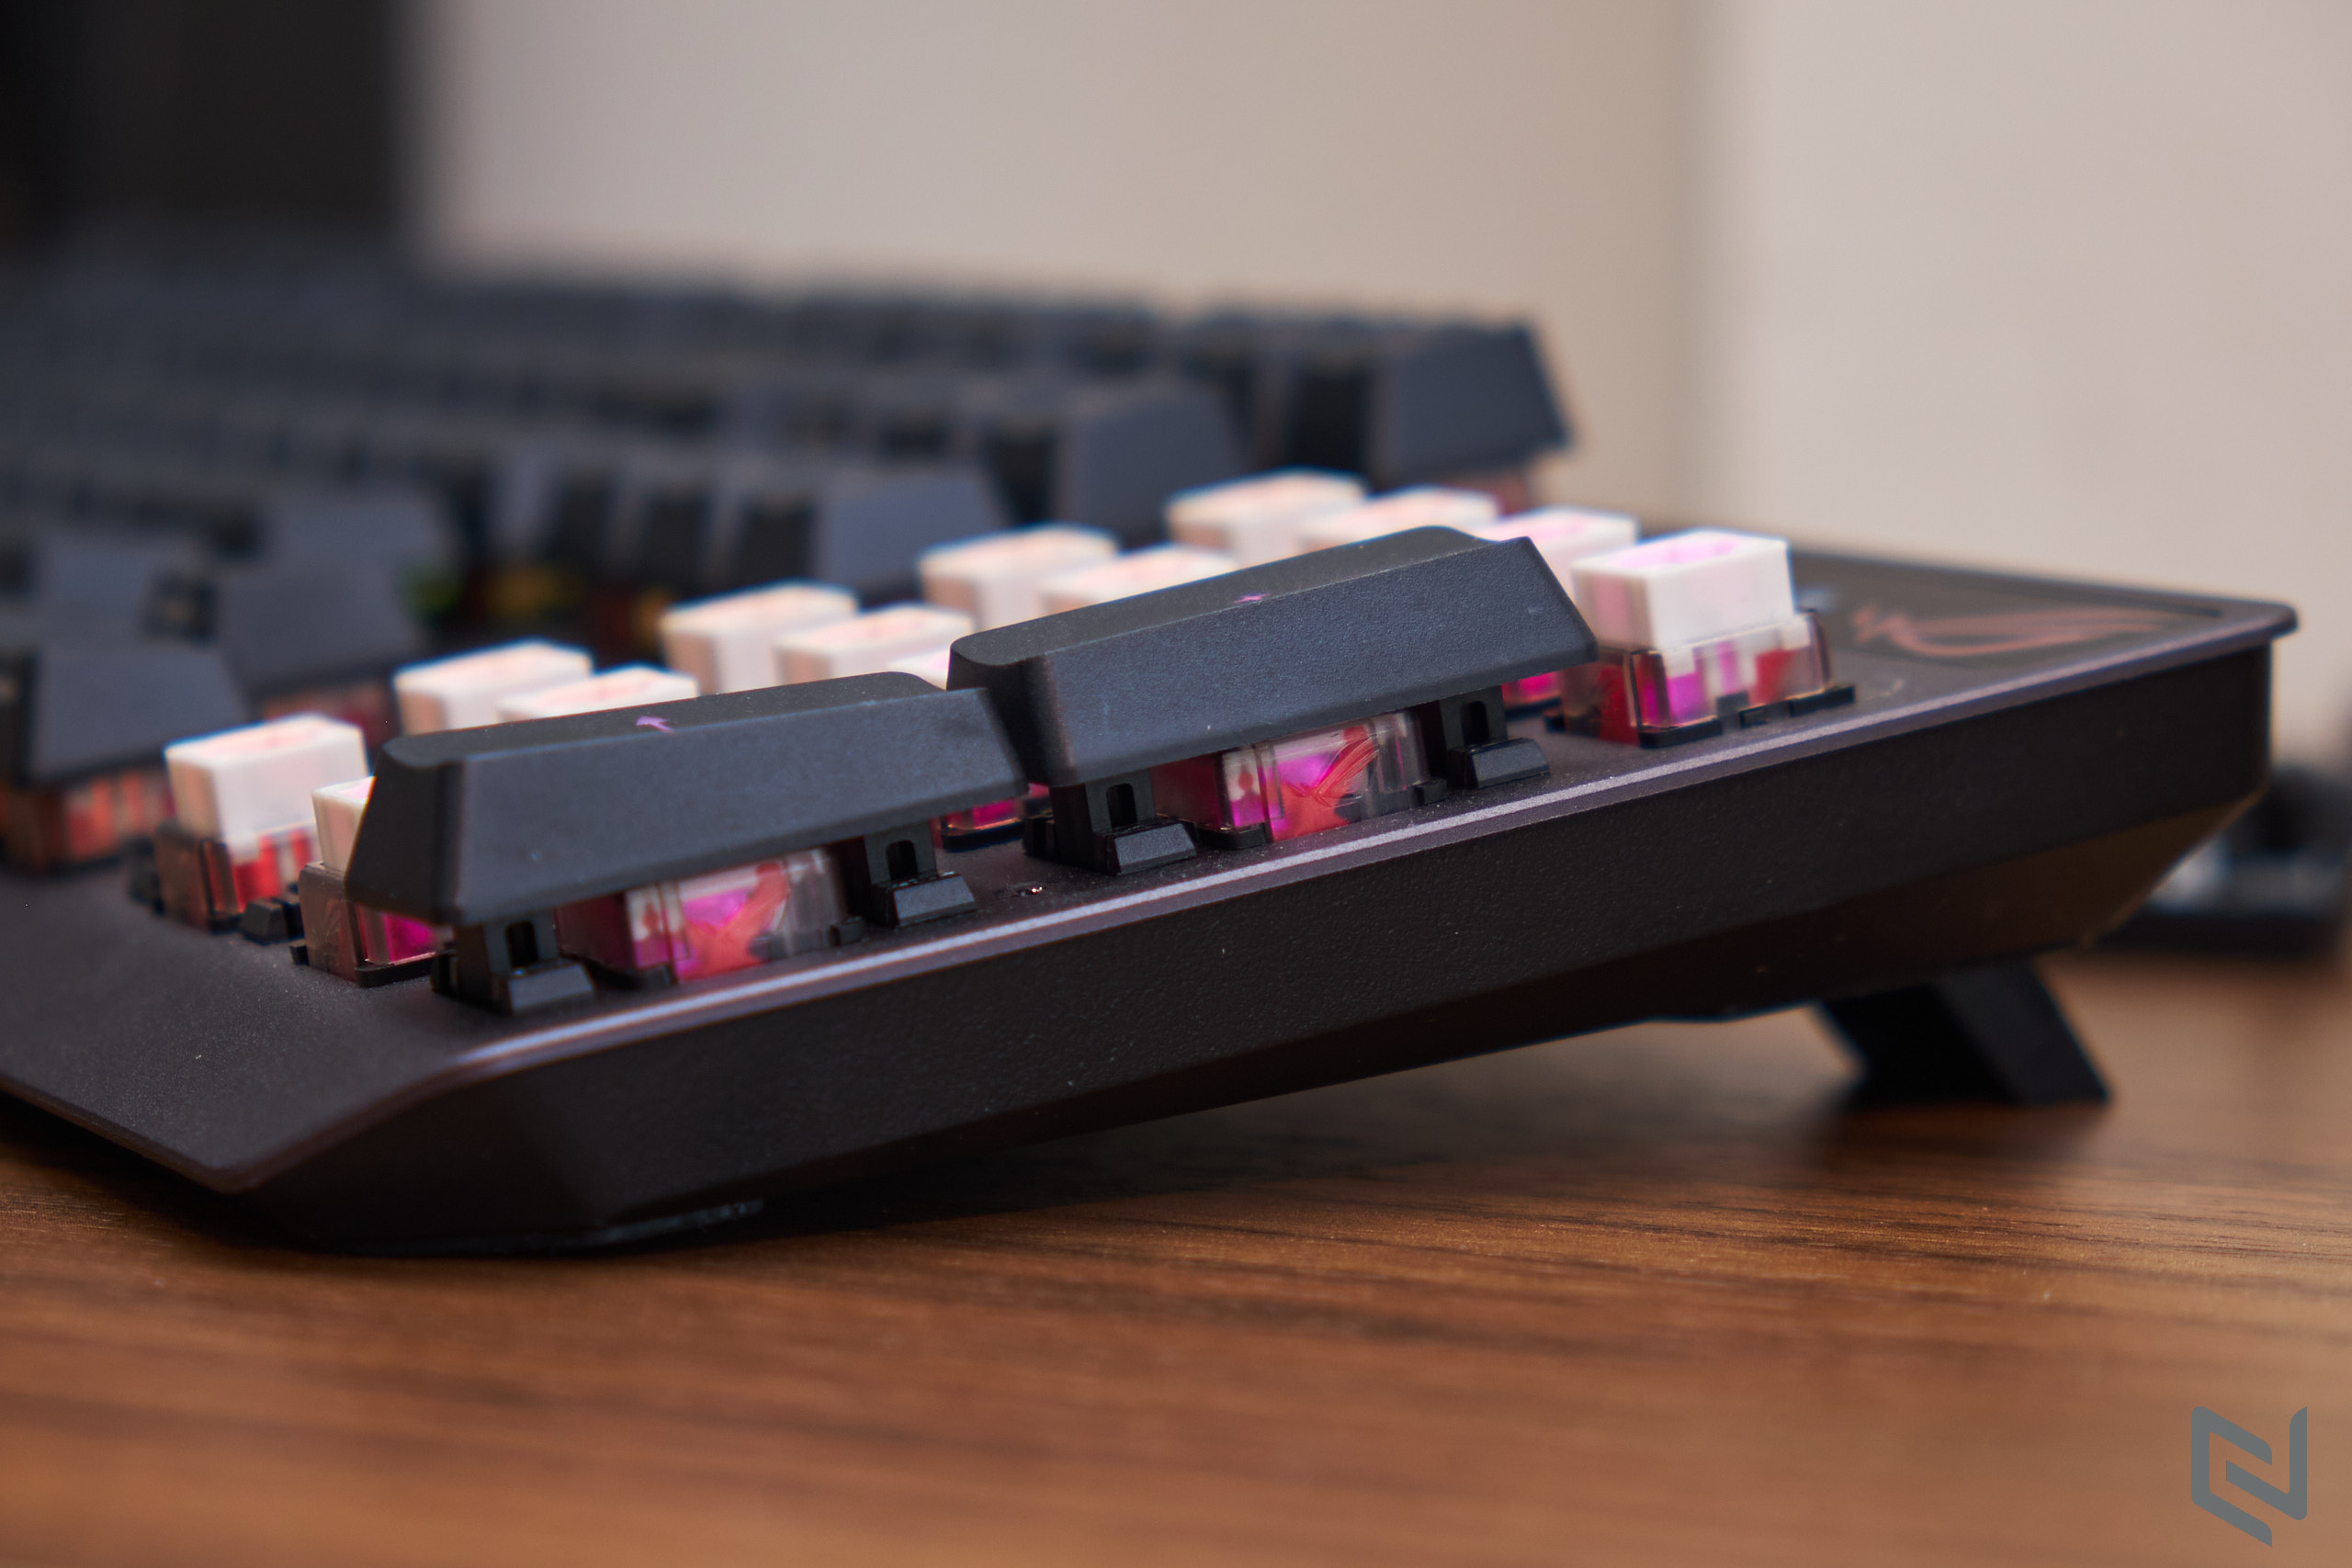 Đánh giá bàn phím cơ ASUS ROG Strix Scope RX: Kích thước full size, switch ROG RX Red chất lượng và phản hồi nhanh